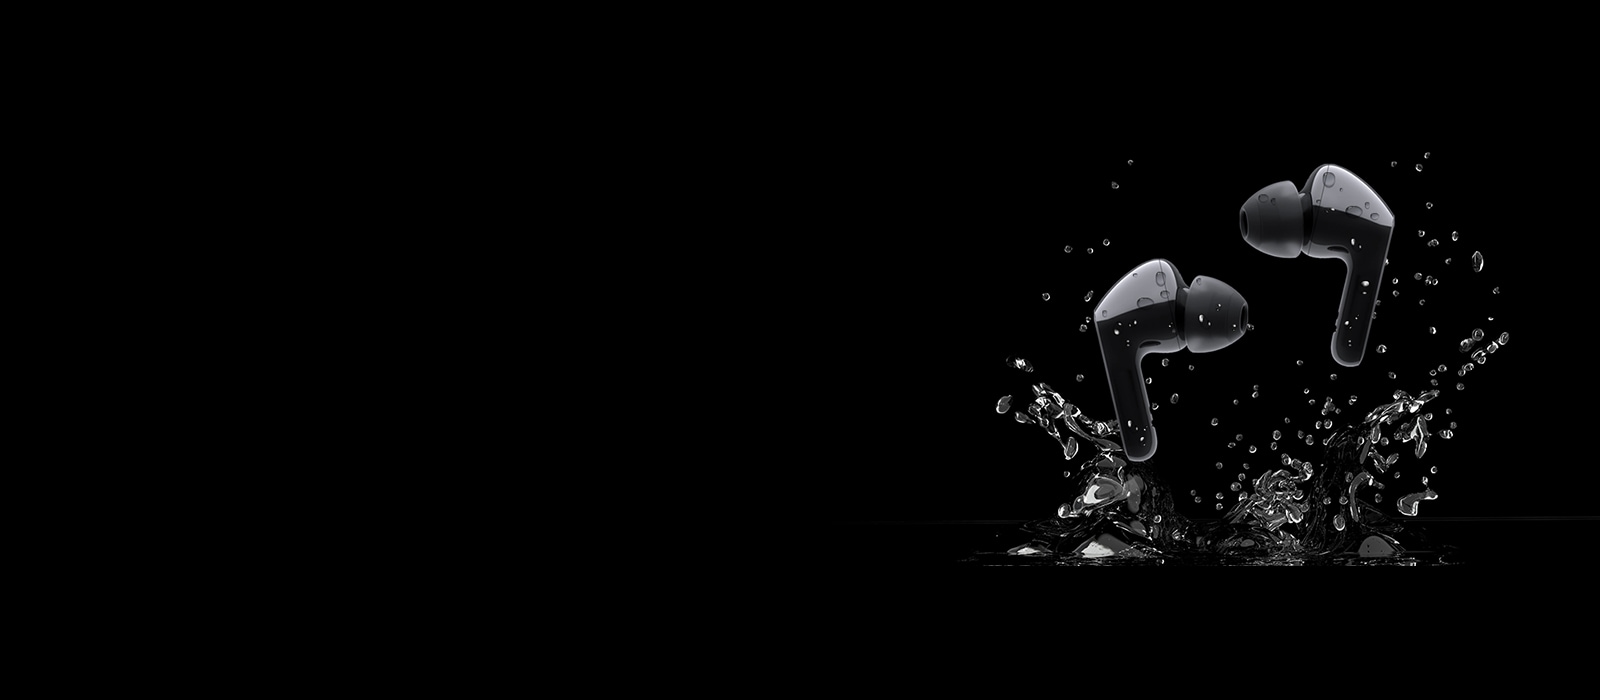 Εικόνα με δύο μαύρα ακουστικά που αναπηδούν σε μια λακκούβα με νερό